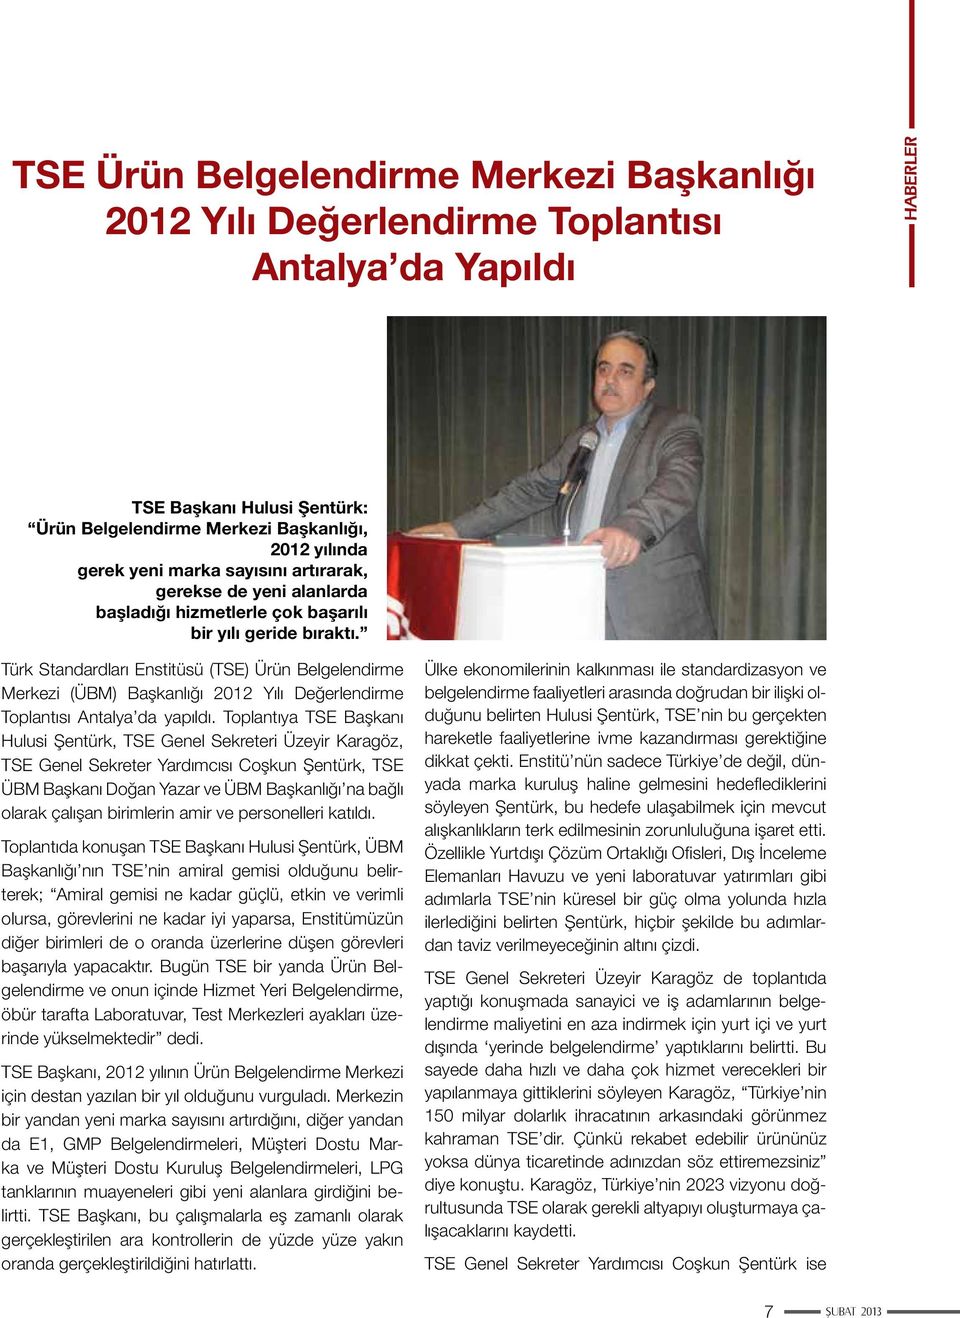 Türk Standardları Enstitüsü (TSE) Ürün Belgelendirme Merkezi (ÜBM) Başkanlığı 2012 Yılı Değerlendirme Toplantısı Antalya da yapıldı.